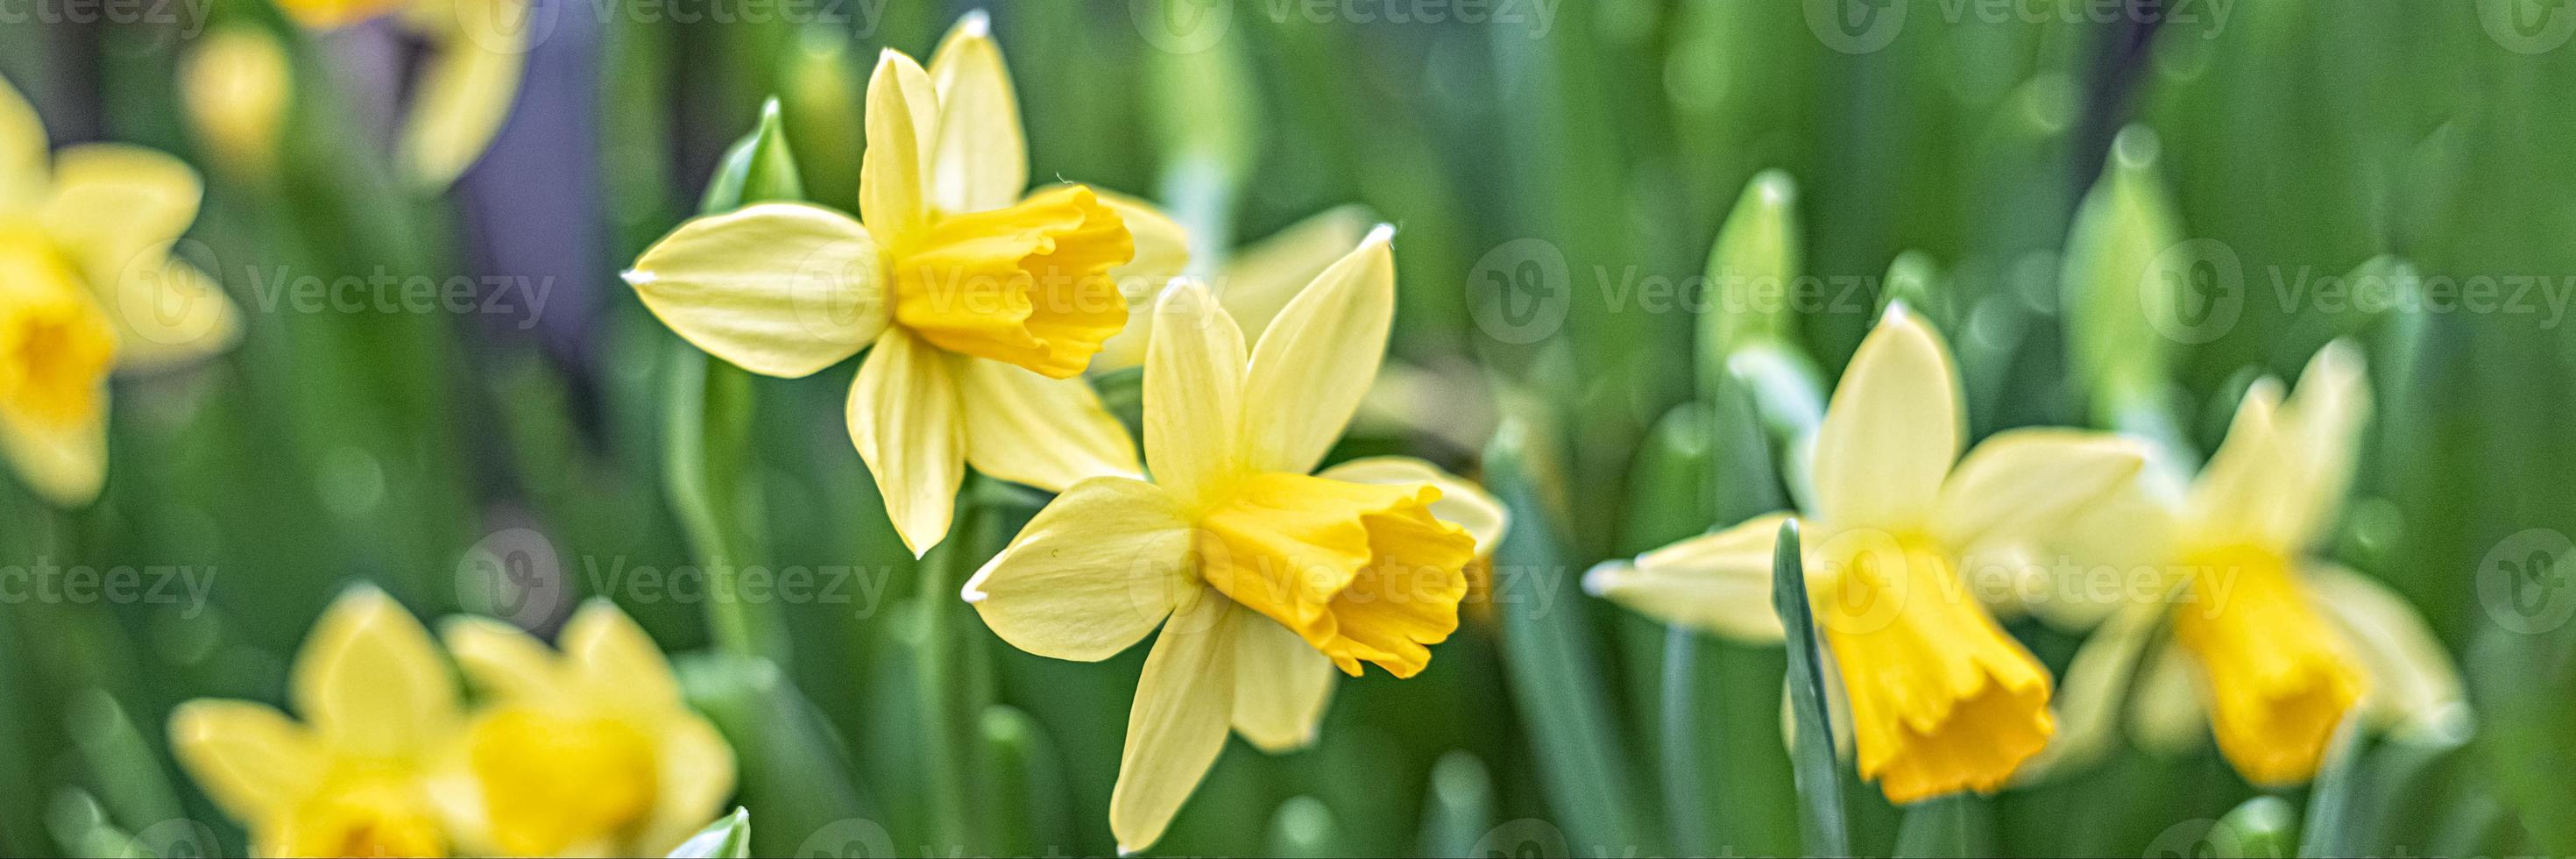 bakgrund från gul narciss i trädgården. vår. blomstrande blommor. baner foto